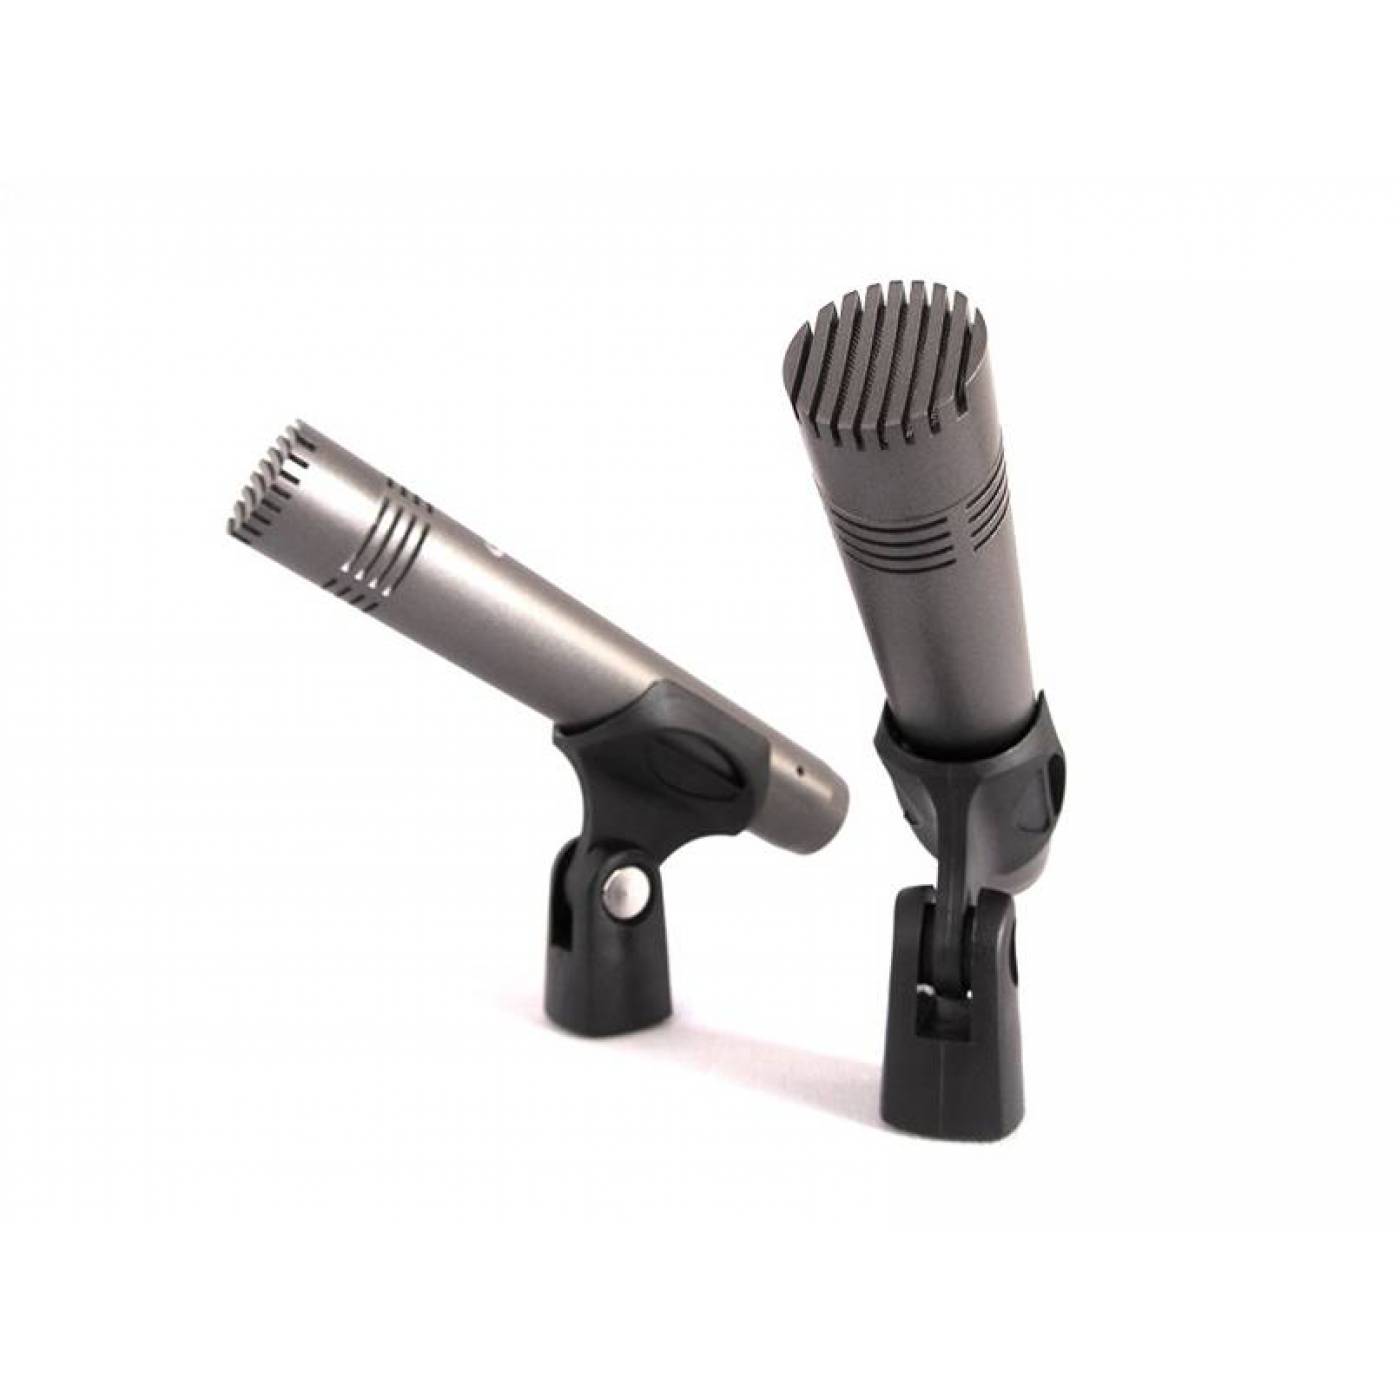 Lpa duo mic. Prodipe pro2xa1 a1. Микрофон инструментальный Prodipe. Микрофонная консоль Duo-Mic 16 зон LPA-Duo-Mic (LPA-Duo). Yamaha проводной микрофон.